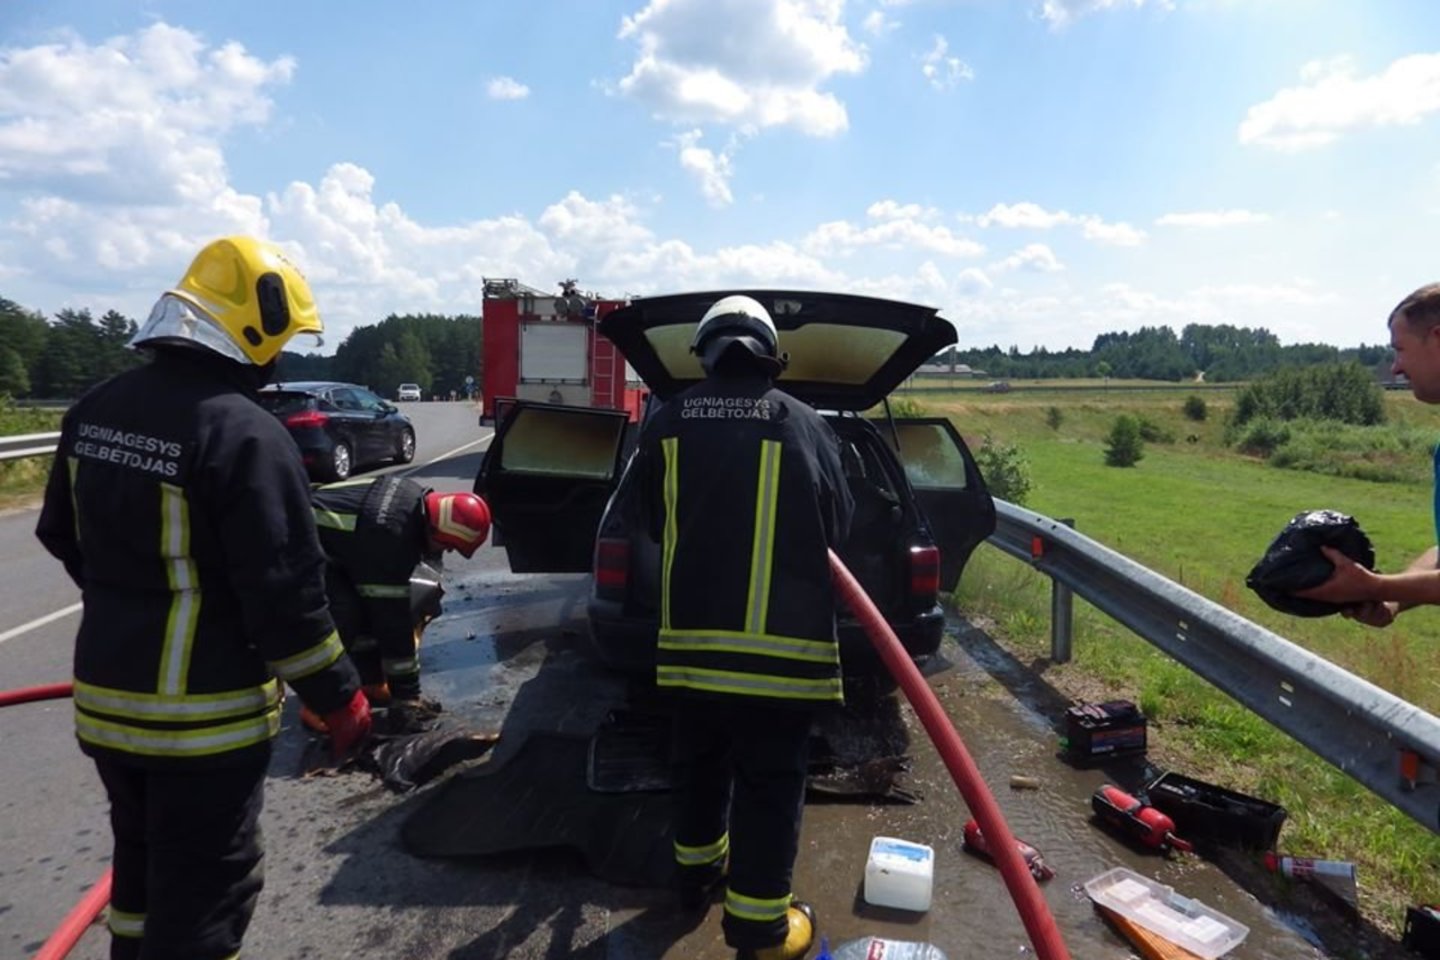  Molėtuose degė „VW Passat“, ugniagesiai perspėja, kad gesintuvas automobiliuose būtinas.<br> Facebook/Molėtų priešgaisrinė gelbėjimo tarnyba nuotr.